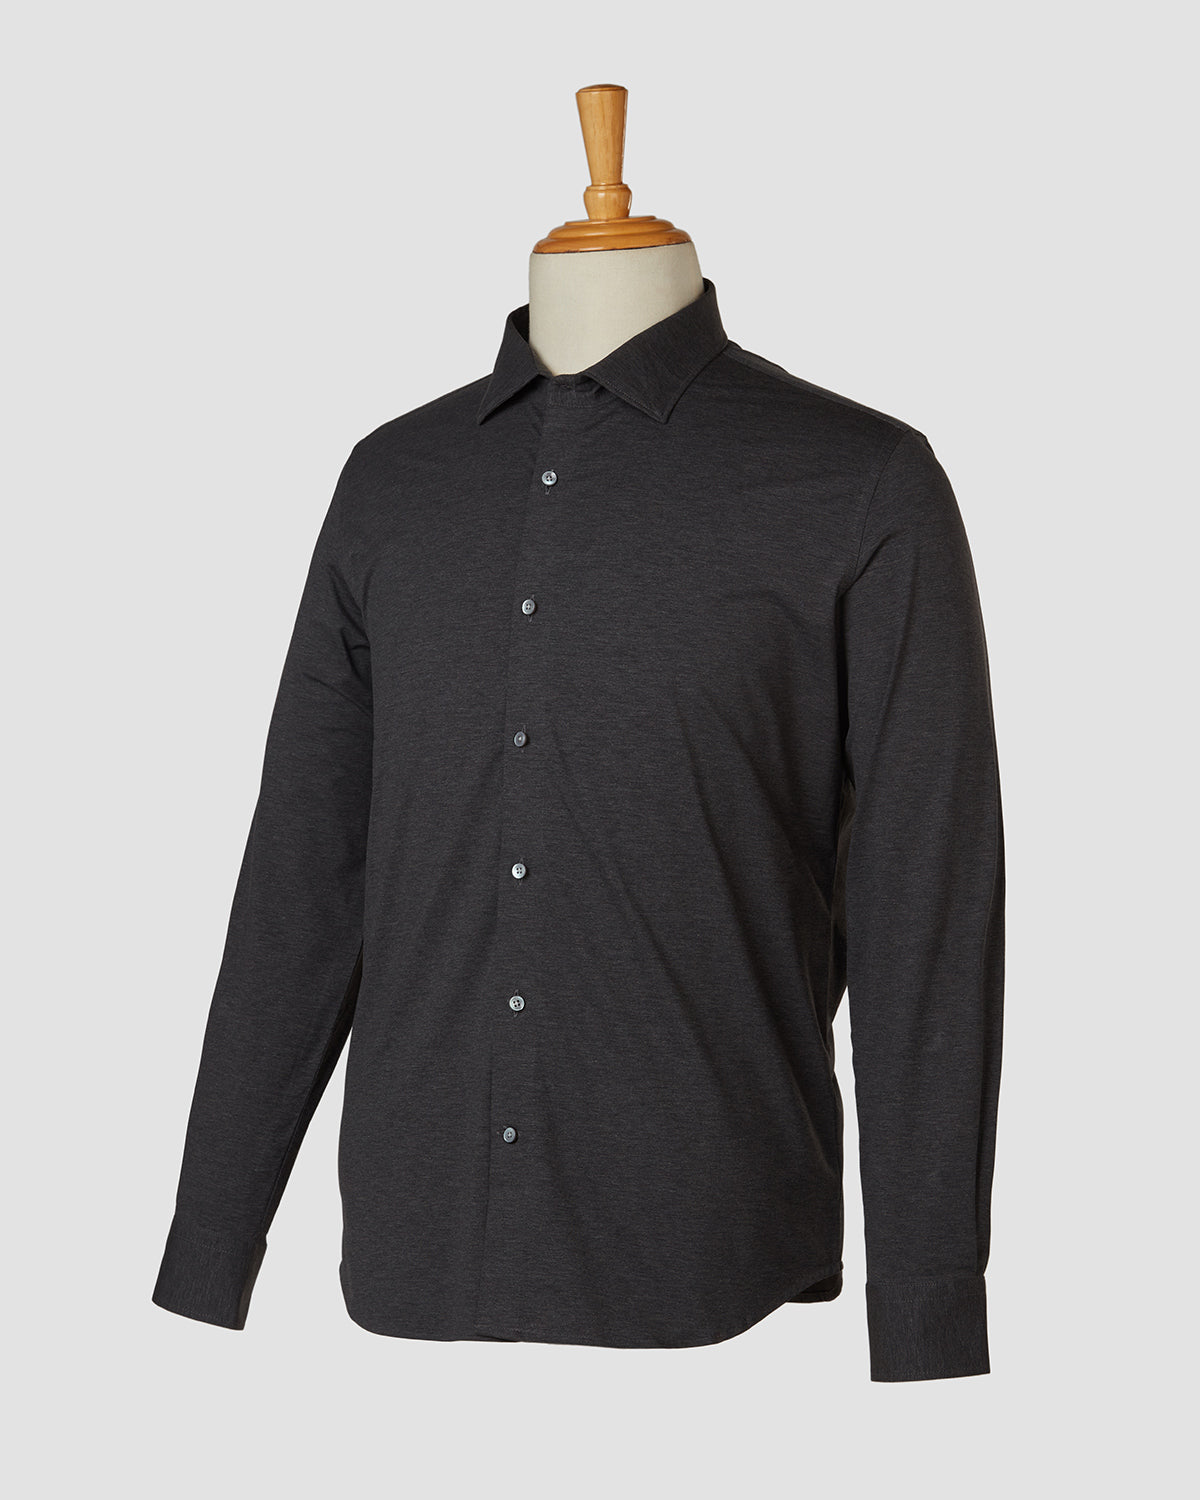 Bombay Shirt Company - Grey Moonstone Knit Shirt